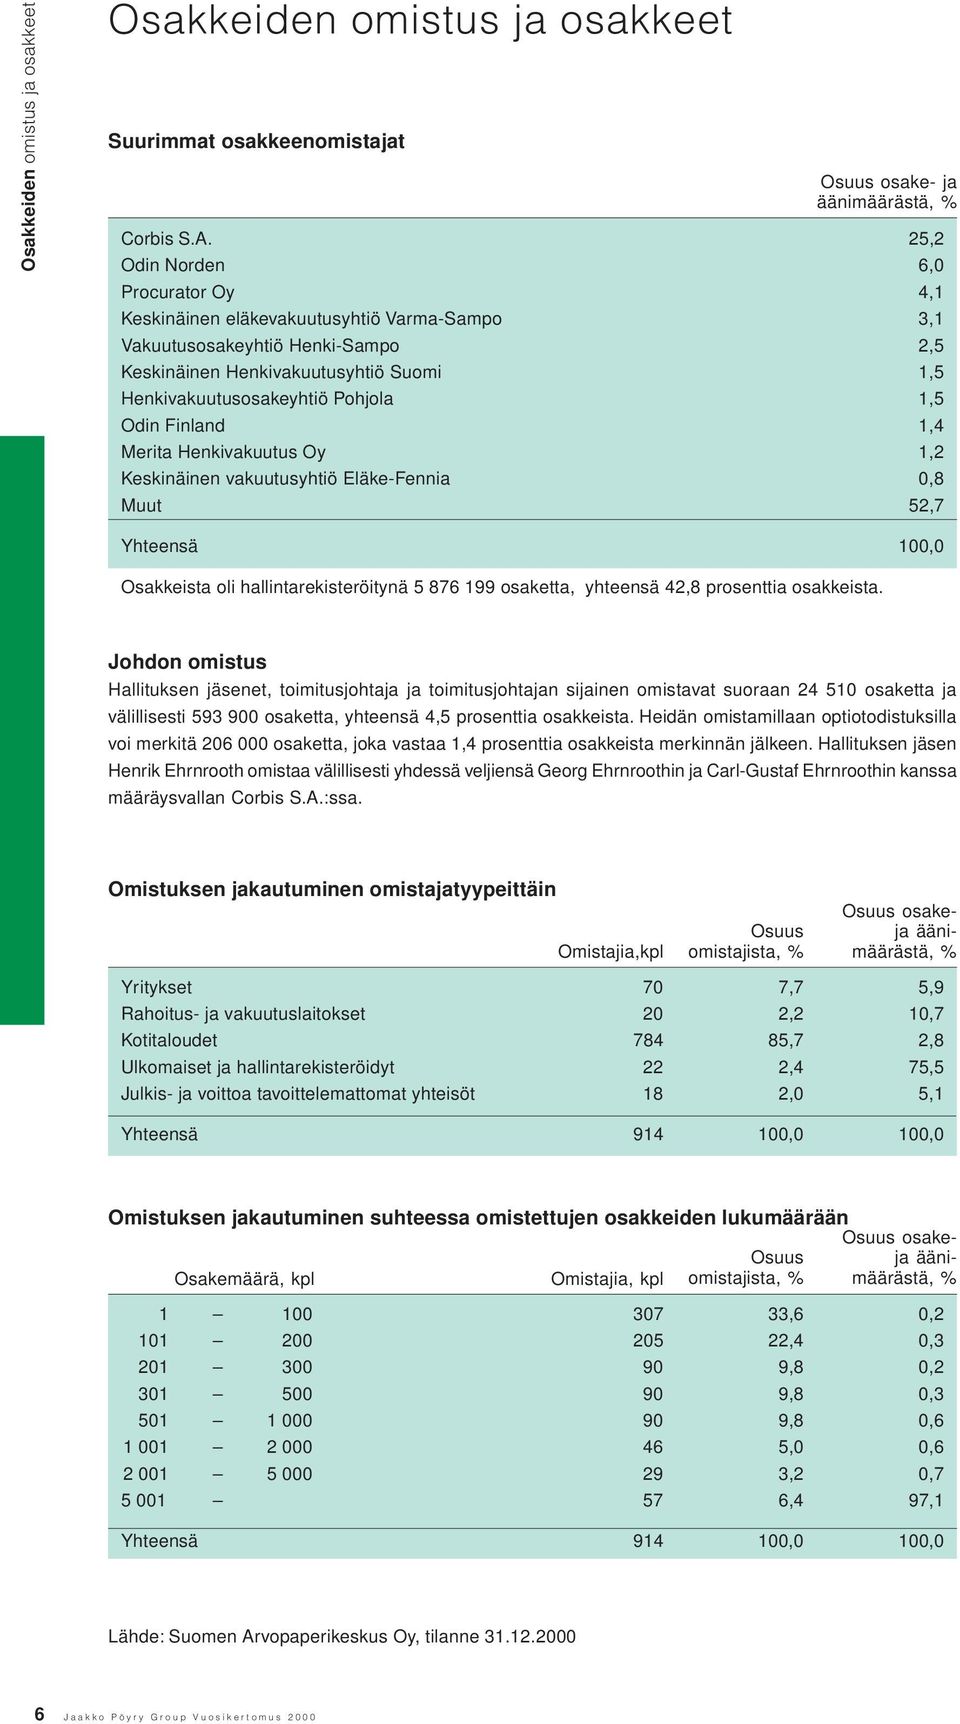 Odin Finland 1,4 Merita Henkivakuutus Oy 1,2 Keskinäinen vakuutusyhtiö Eläke-Fennia,8 Muut 52,7 Yhteensä 1, Osakkeista oli hallintarekisteröitynä 5 876 199 osaketta, yhteensä 42,8 prosenttia